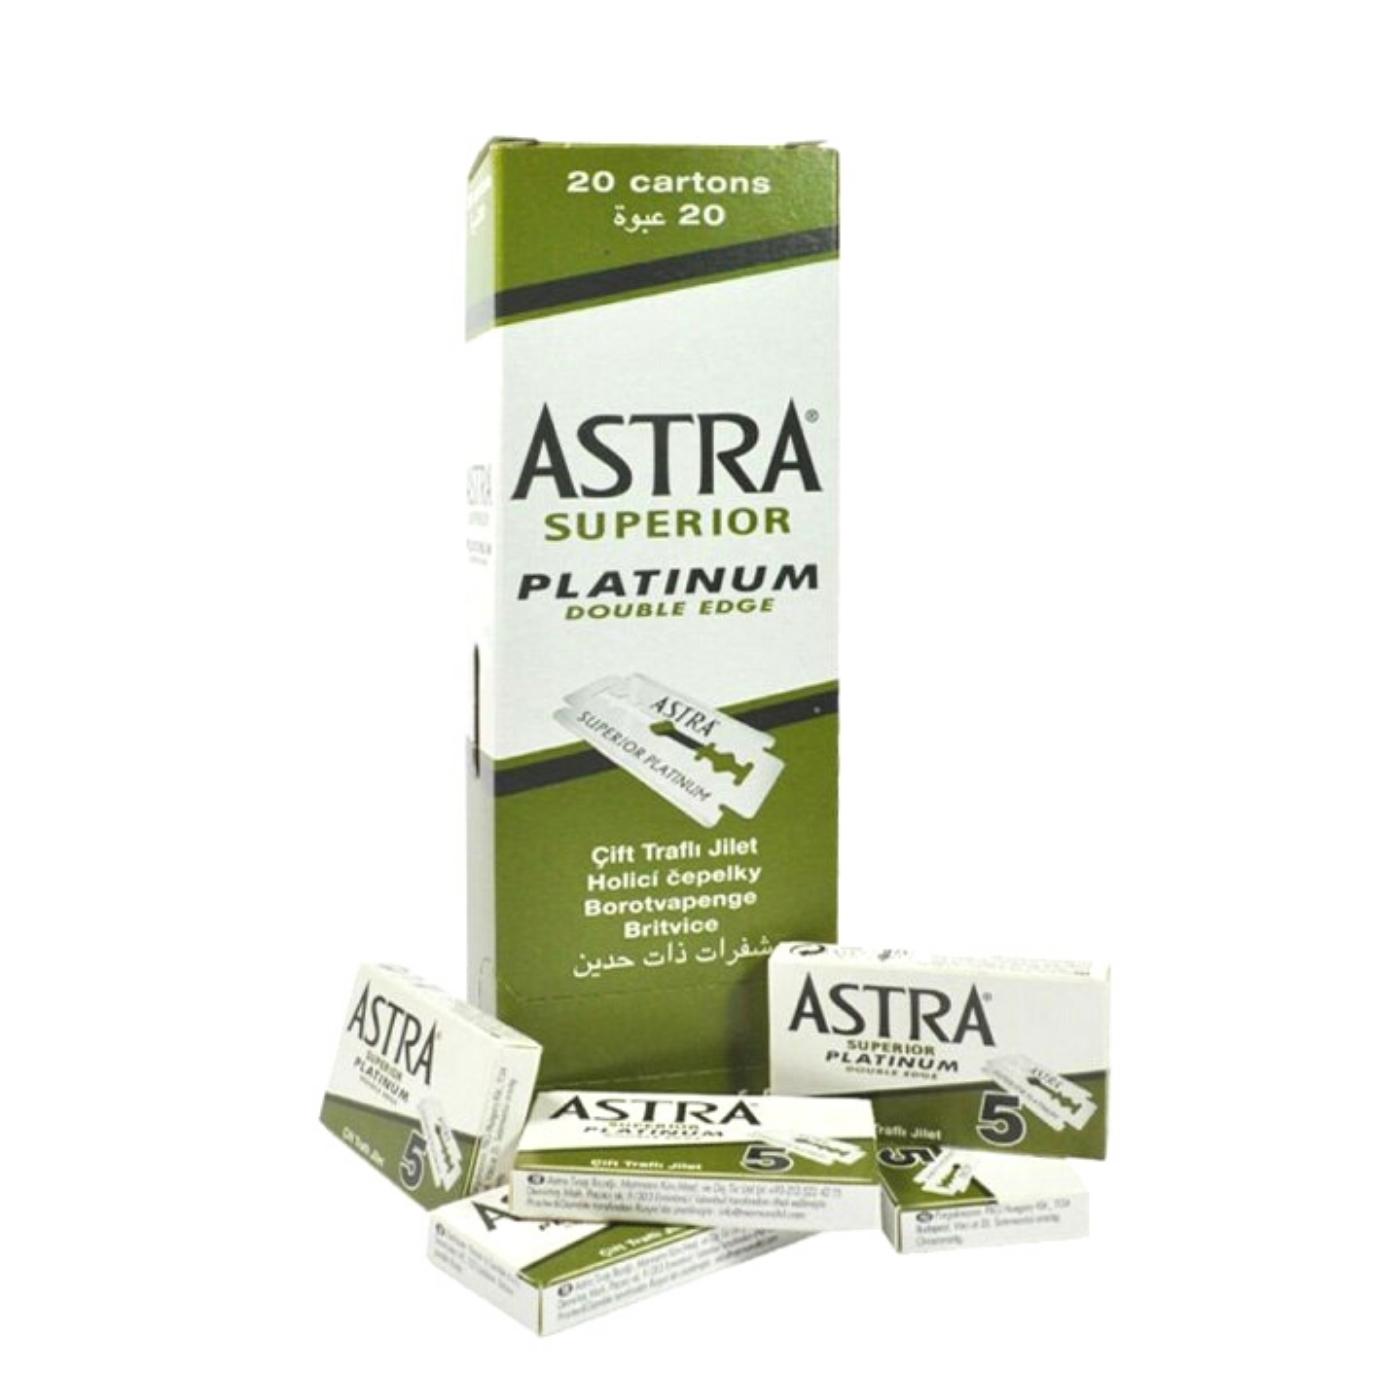 Astra Rasierklingen Superior Platinum Double Edge - Rasierklingen für Rasierhobel - Packungsinhalt 100 Stück